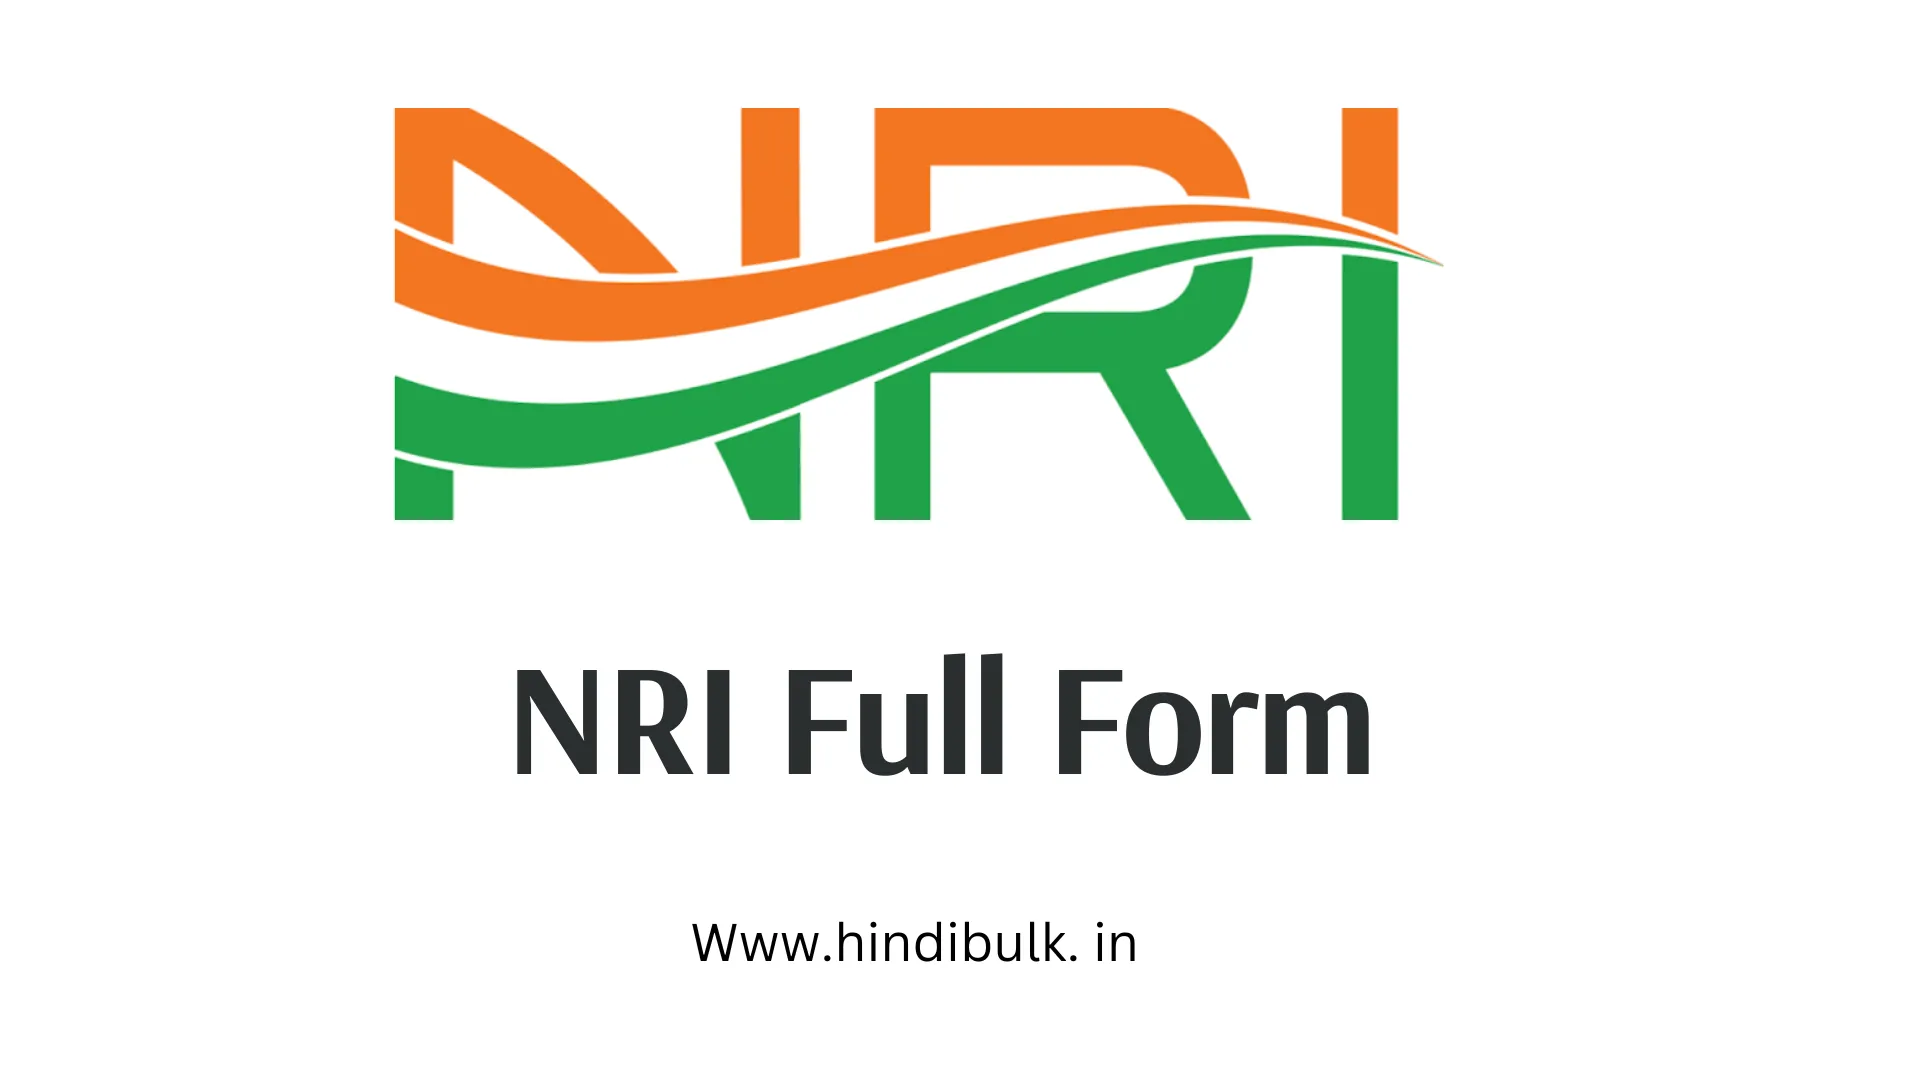 NRI Full Form in Hindi – एनआरआई की फुल फॉर्म क्या है?